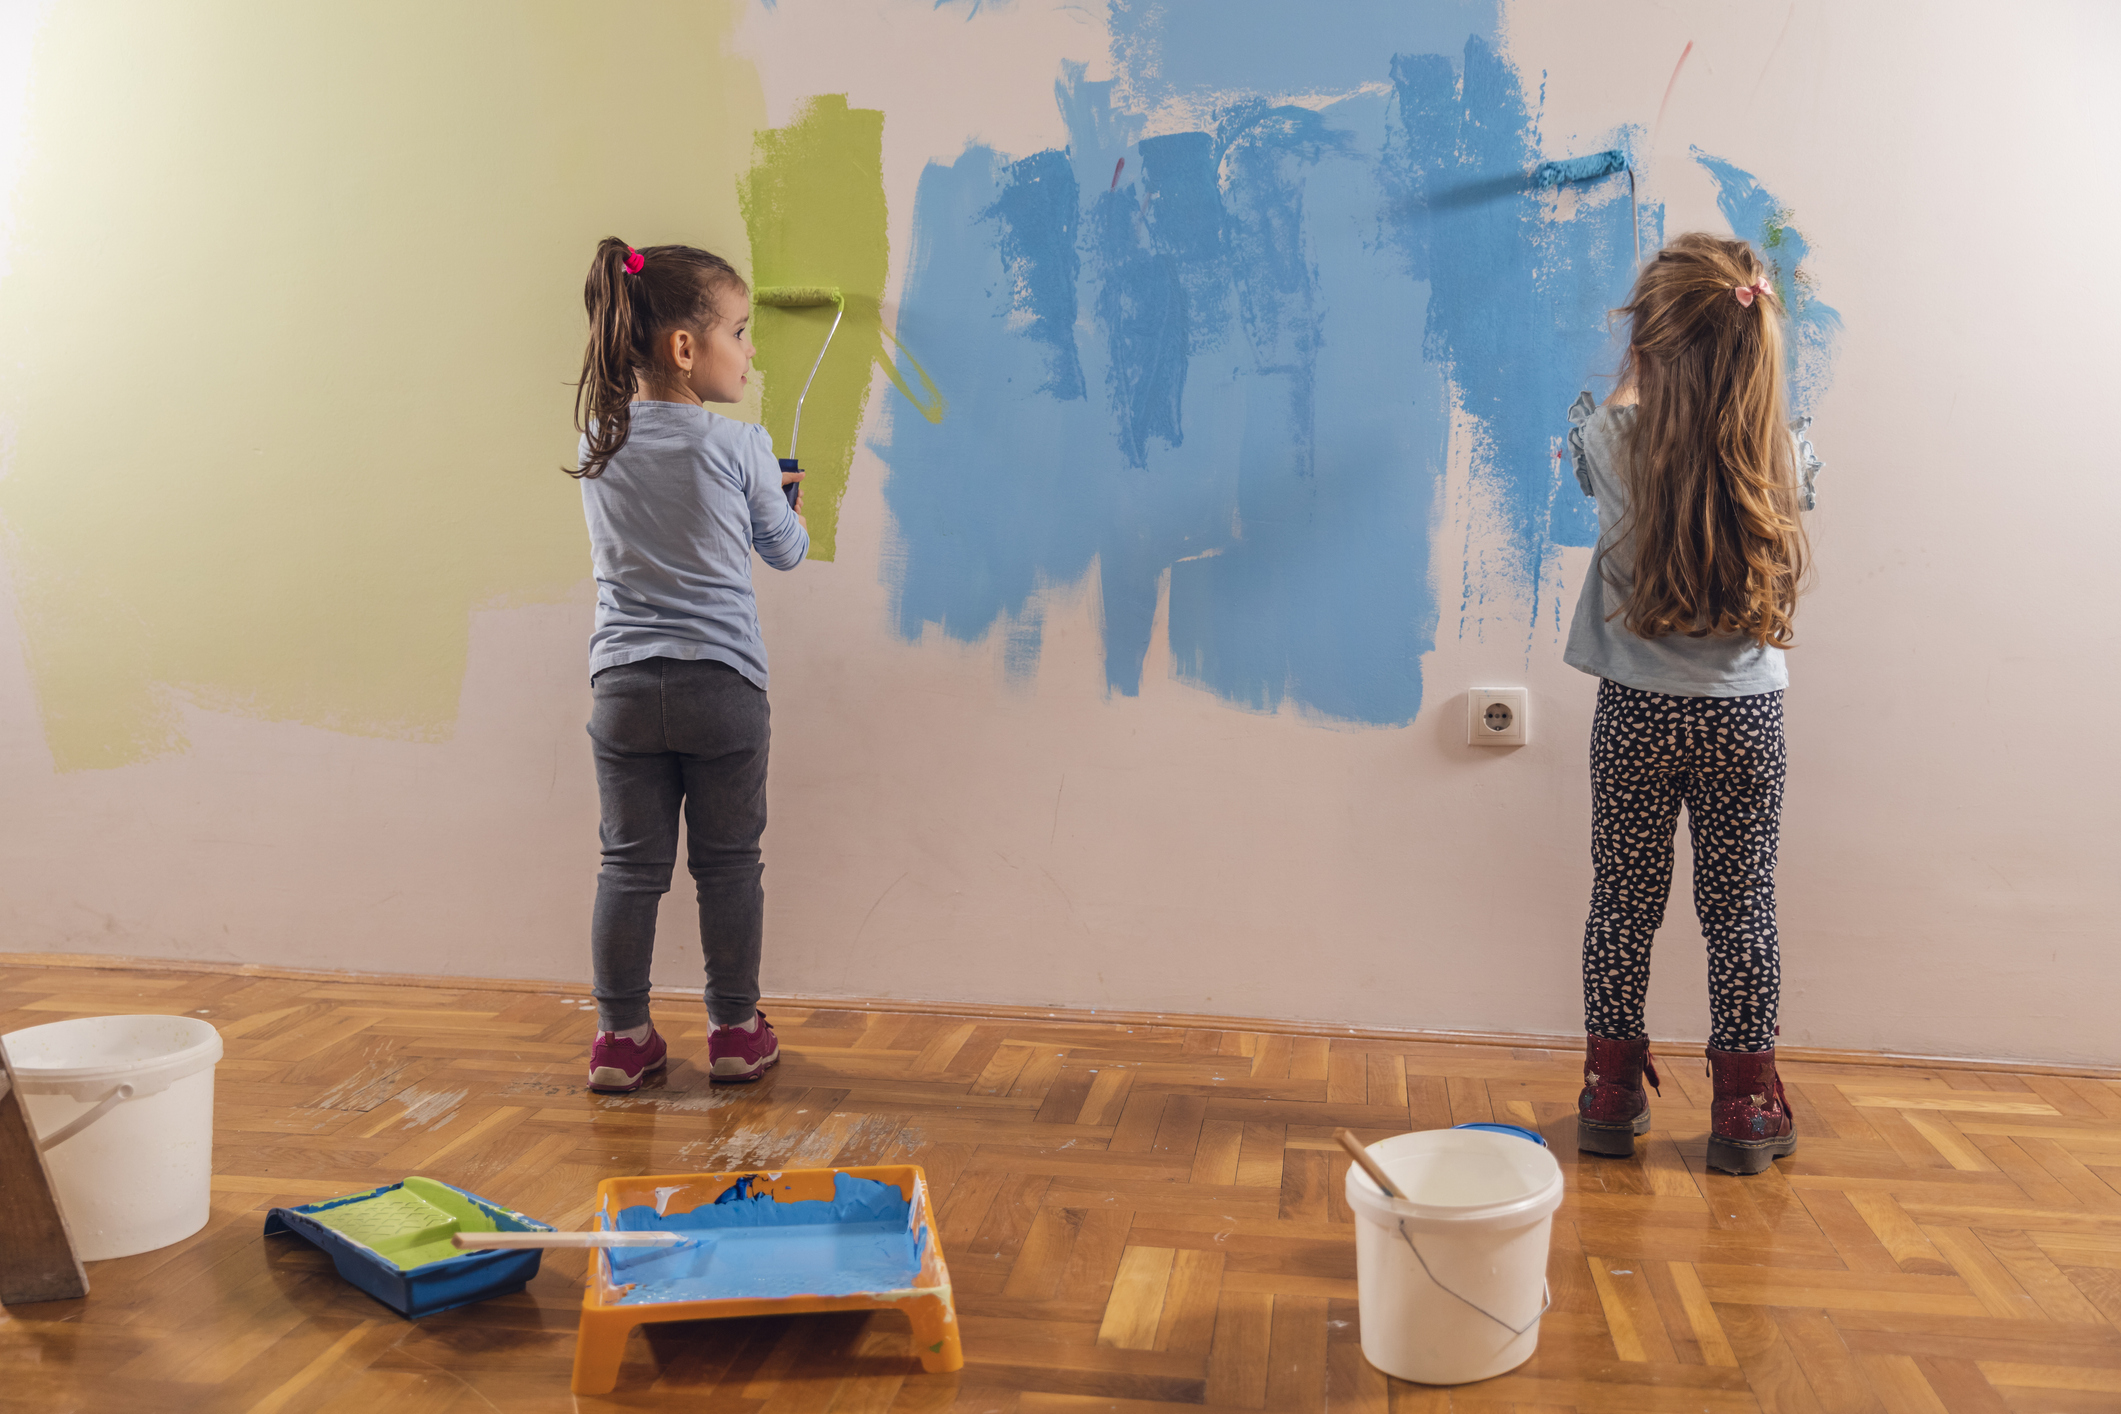 Zwei kleine Kinder streichen gemeinsam eine Wand.